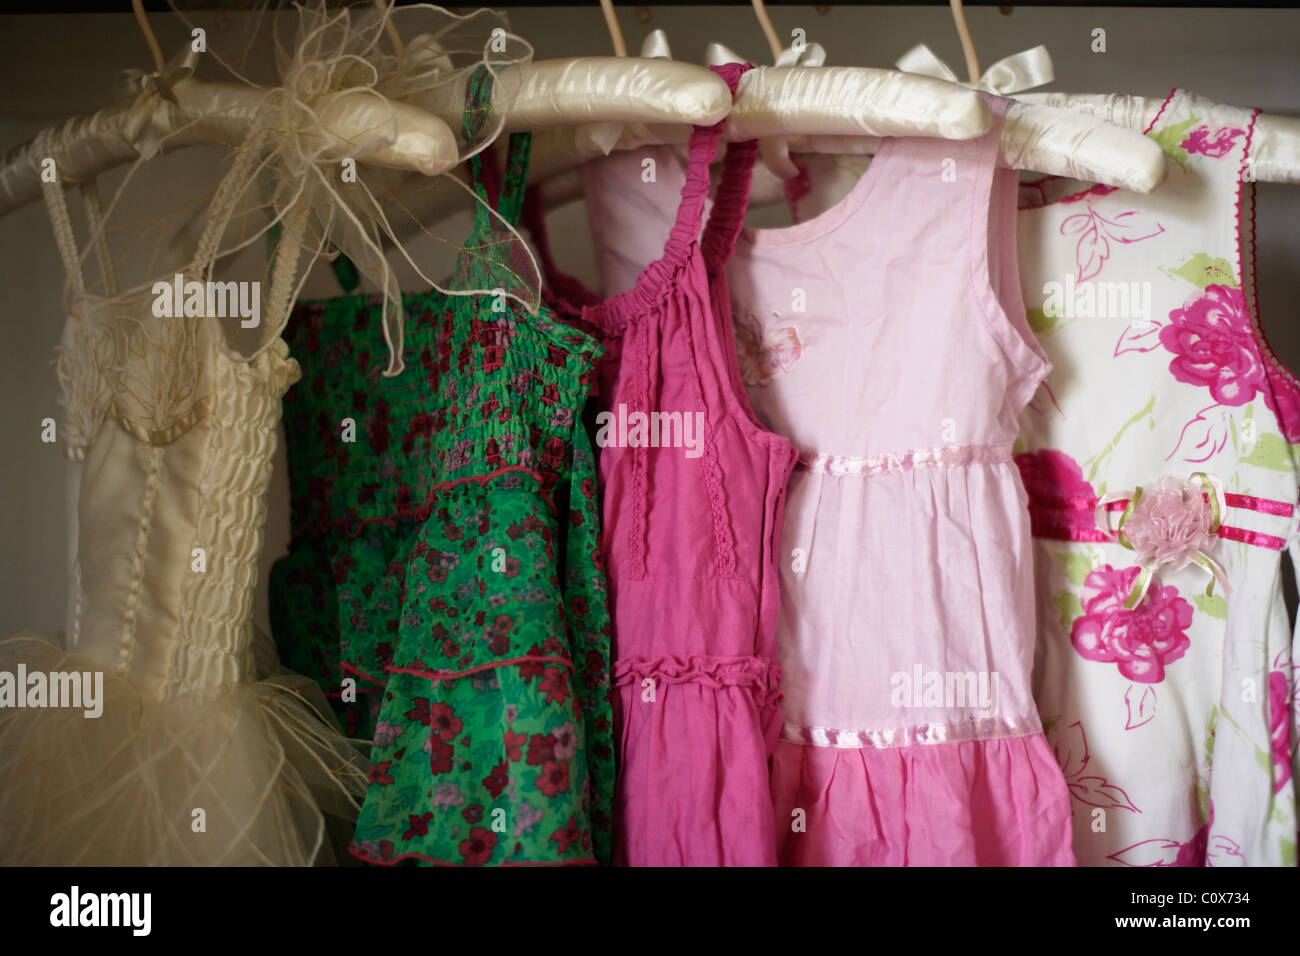 Girl's dresses on padded hangers Stock Photo